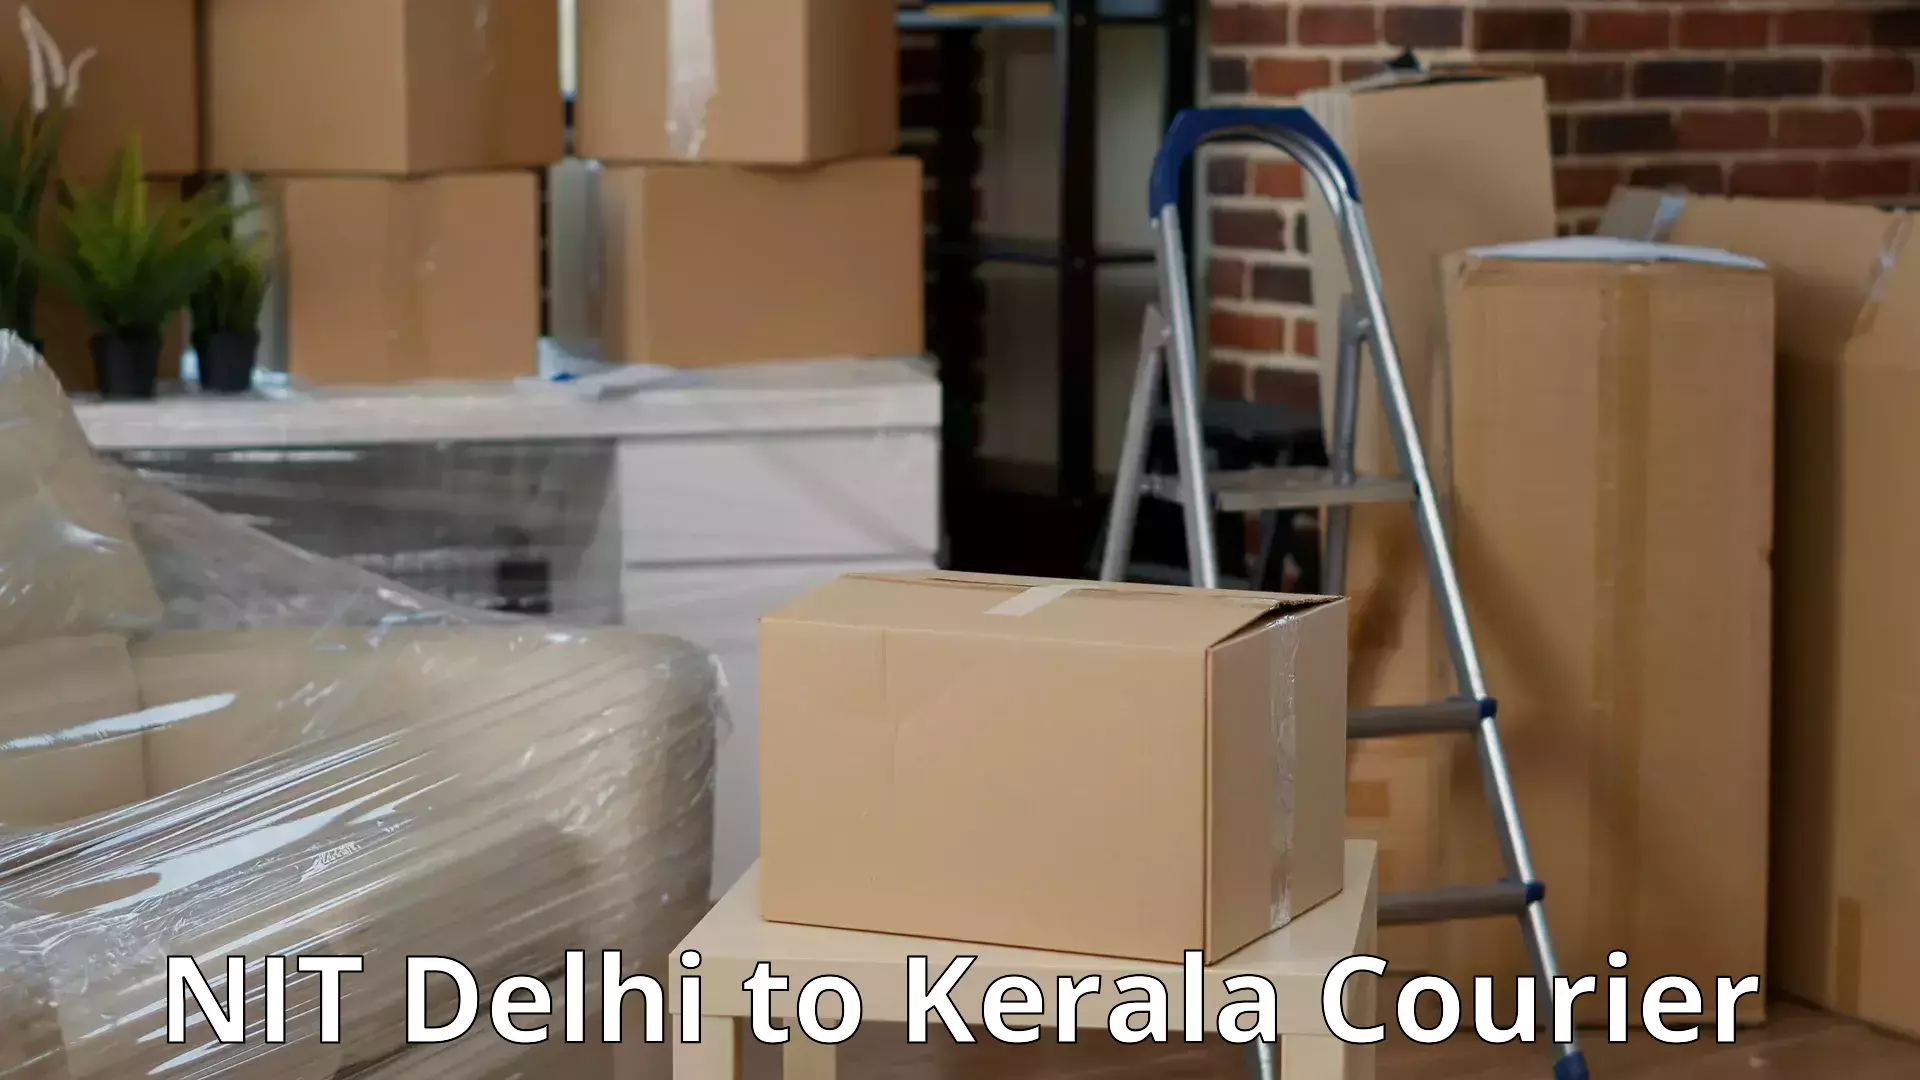 Efficient relocation services NIT Delhi to Kerala